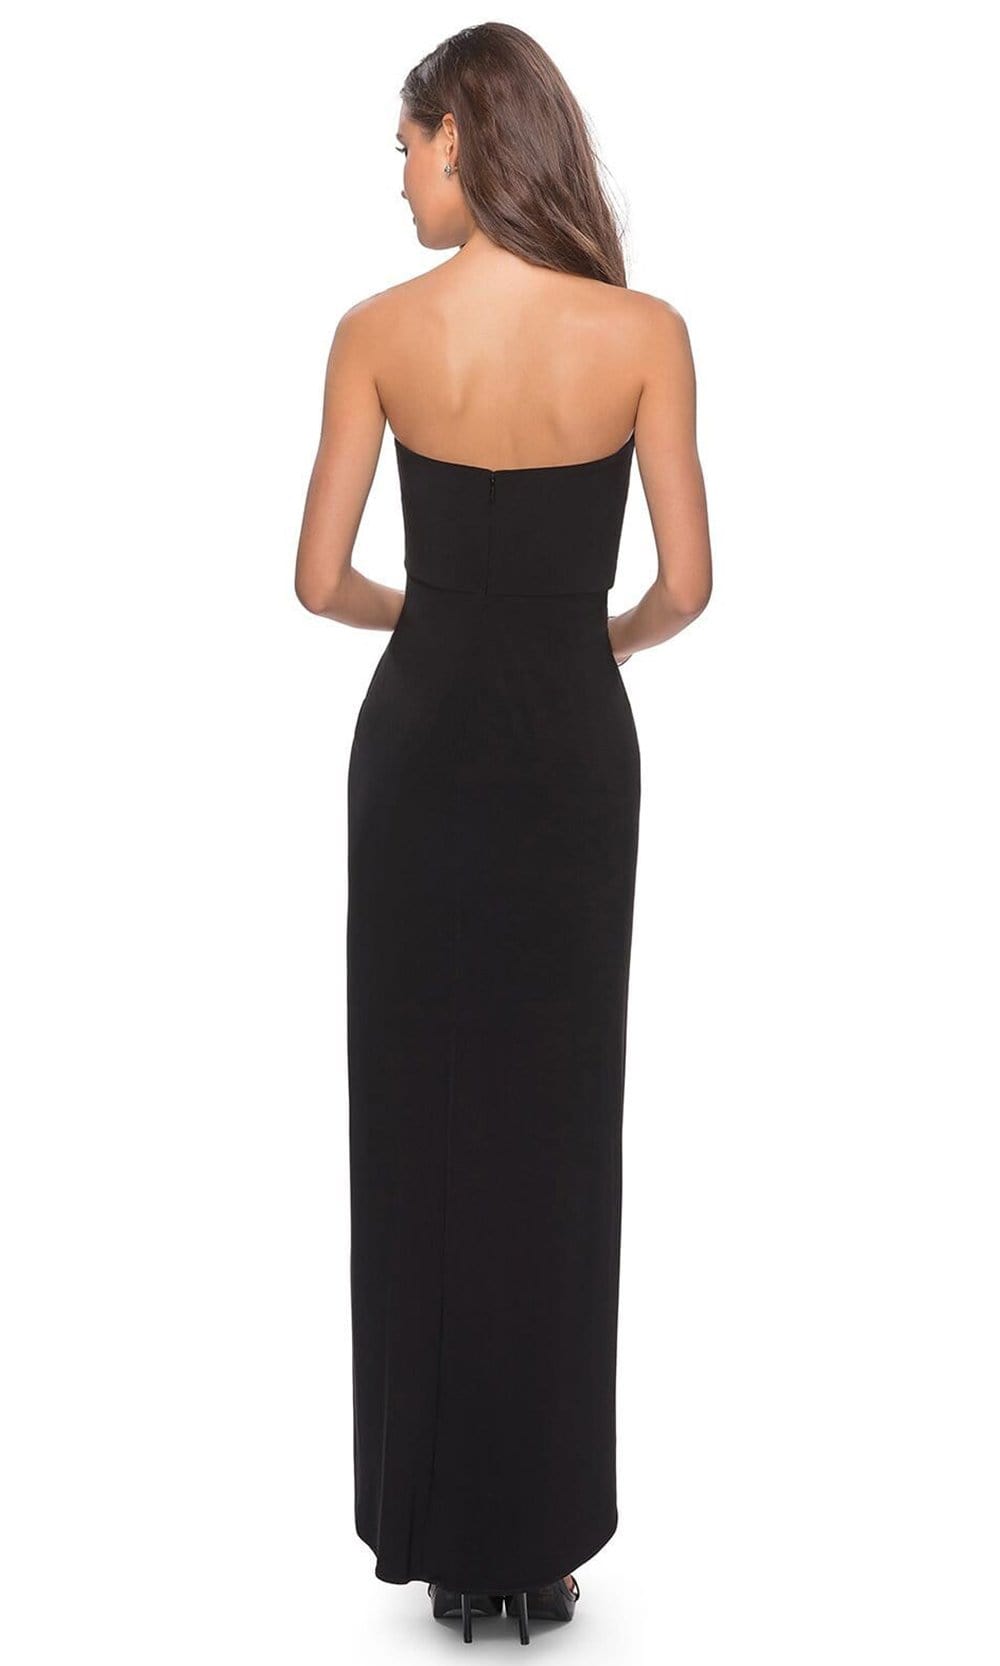 La Femme - Straight Across Faux Wrap Sheath Gown 28204SC - 1 pc Black In Size 14 Available CCSALE 14 / Black